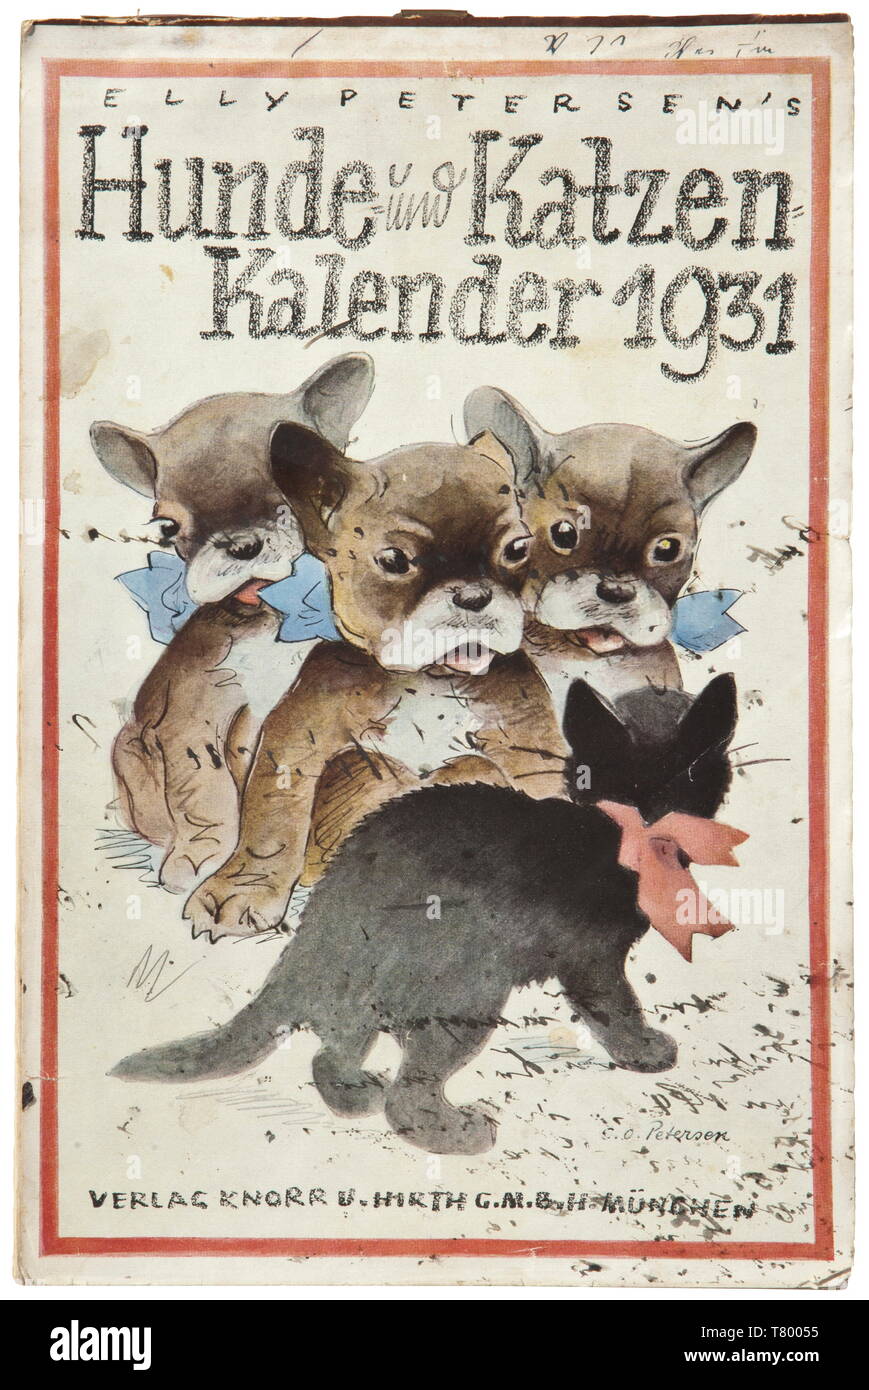 Angela 'geli' Rabaul (1908 - 1931) - Adolf Hitler strappare il calendario per l'anno 1931. "Hunde und Katzen 1931' (cani e gatti), il nuovo anno pagina con una piccola scritta in inchiostro 'von Onkel Lupo' (da zio lupo), il lato sinistro con incollata una in fattura da parte della società Prantl e collaboratori, Monaco di Baviera per il 'Haushaltung Adolf Hitler, Schriftsteller München, Prinzregentenplatz 16/II zu Hdn. von Frau inverno' (Adolf Hitler domestico, autore di Monaco di Baviera, Prinzregentenplatz 16/II F.A.O. Frau inverno) e incollati in una busta con piccola scheda prevista in 'Messa den herzlichen Neujahrswünschen Onkel Wolf München, Editorial-Use-solo Foto Stock